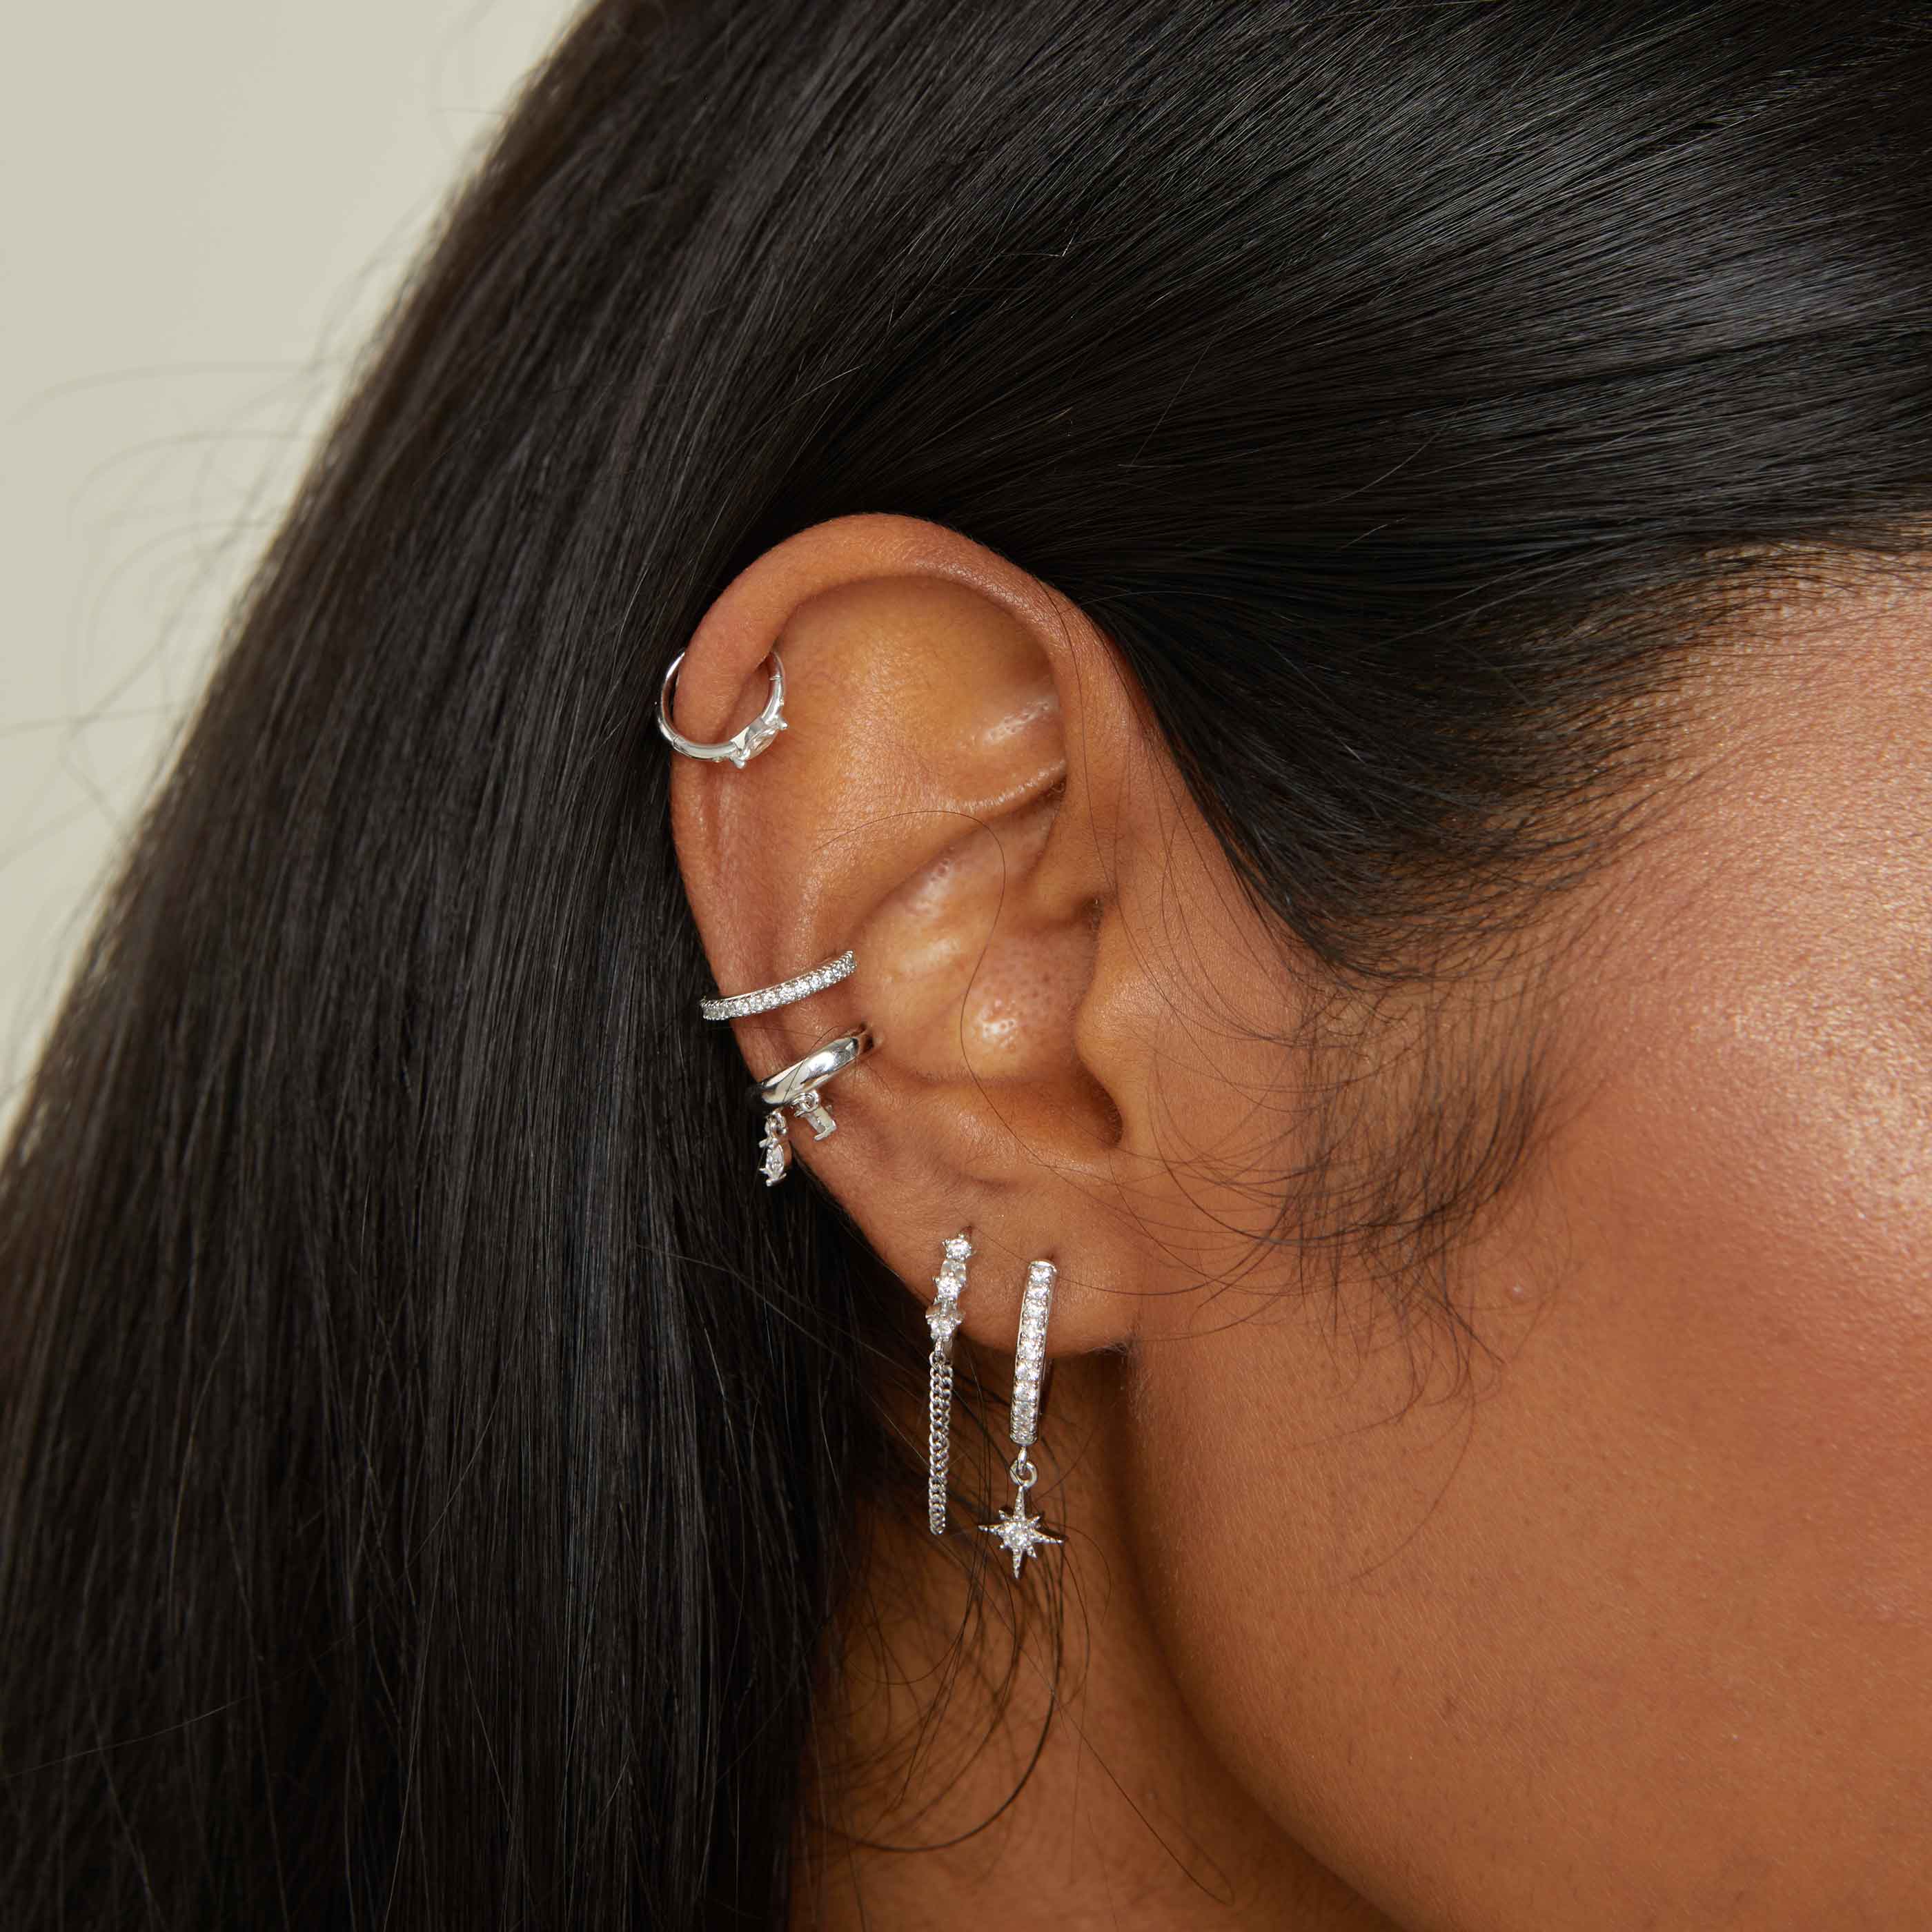 Silver Crystal Ear Cuff | Astrid & Miyu Earrings